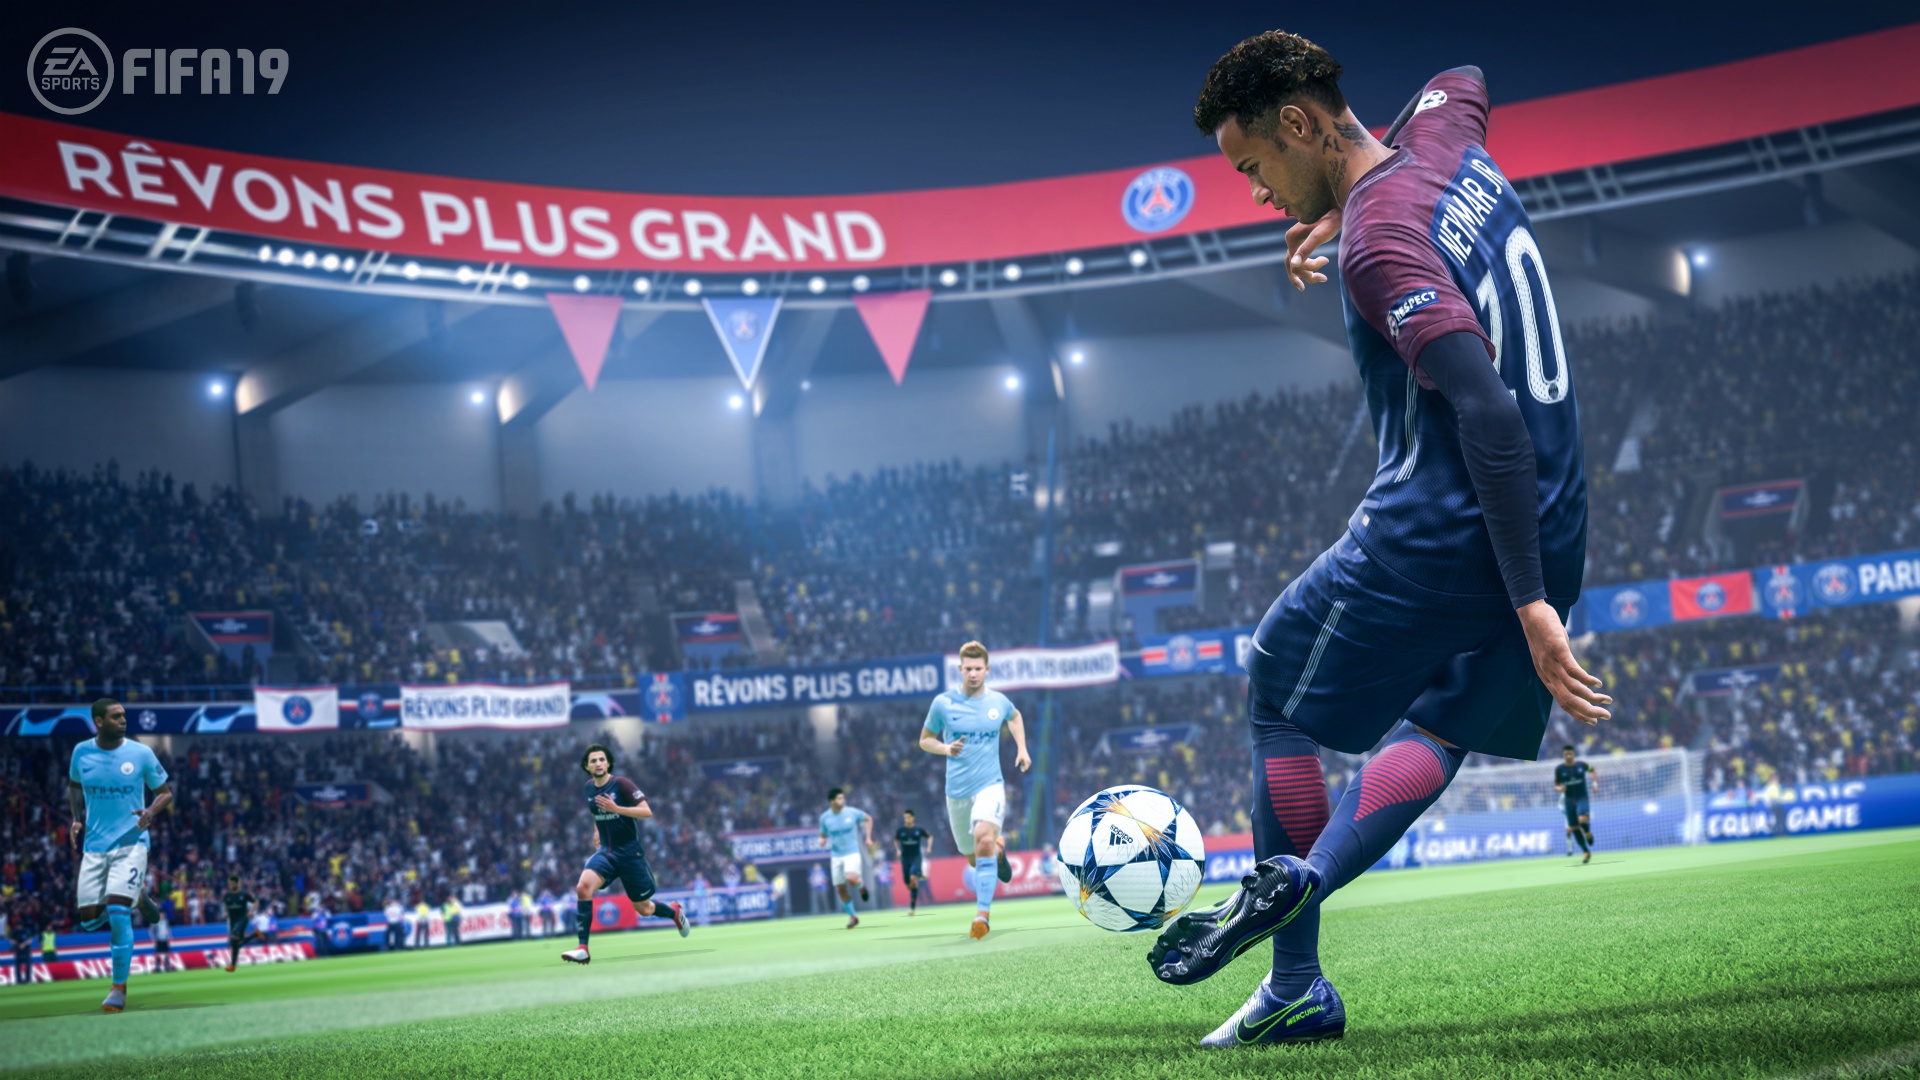 Se filtra el primer gameplay de FIFA 19